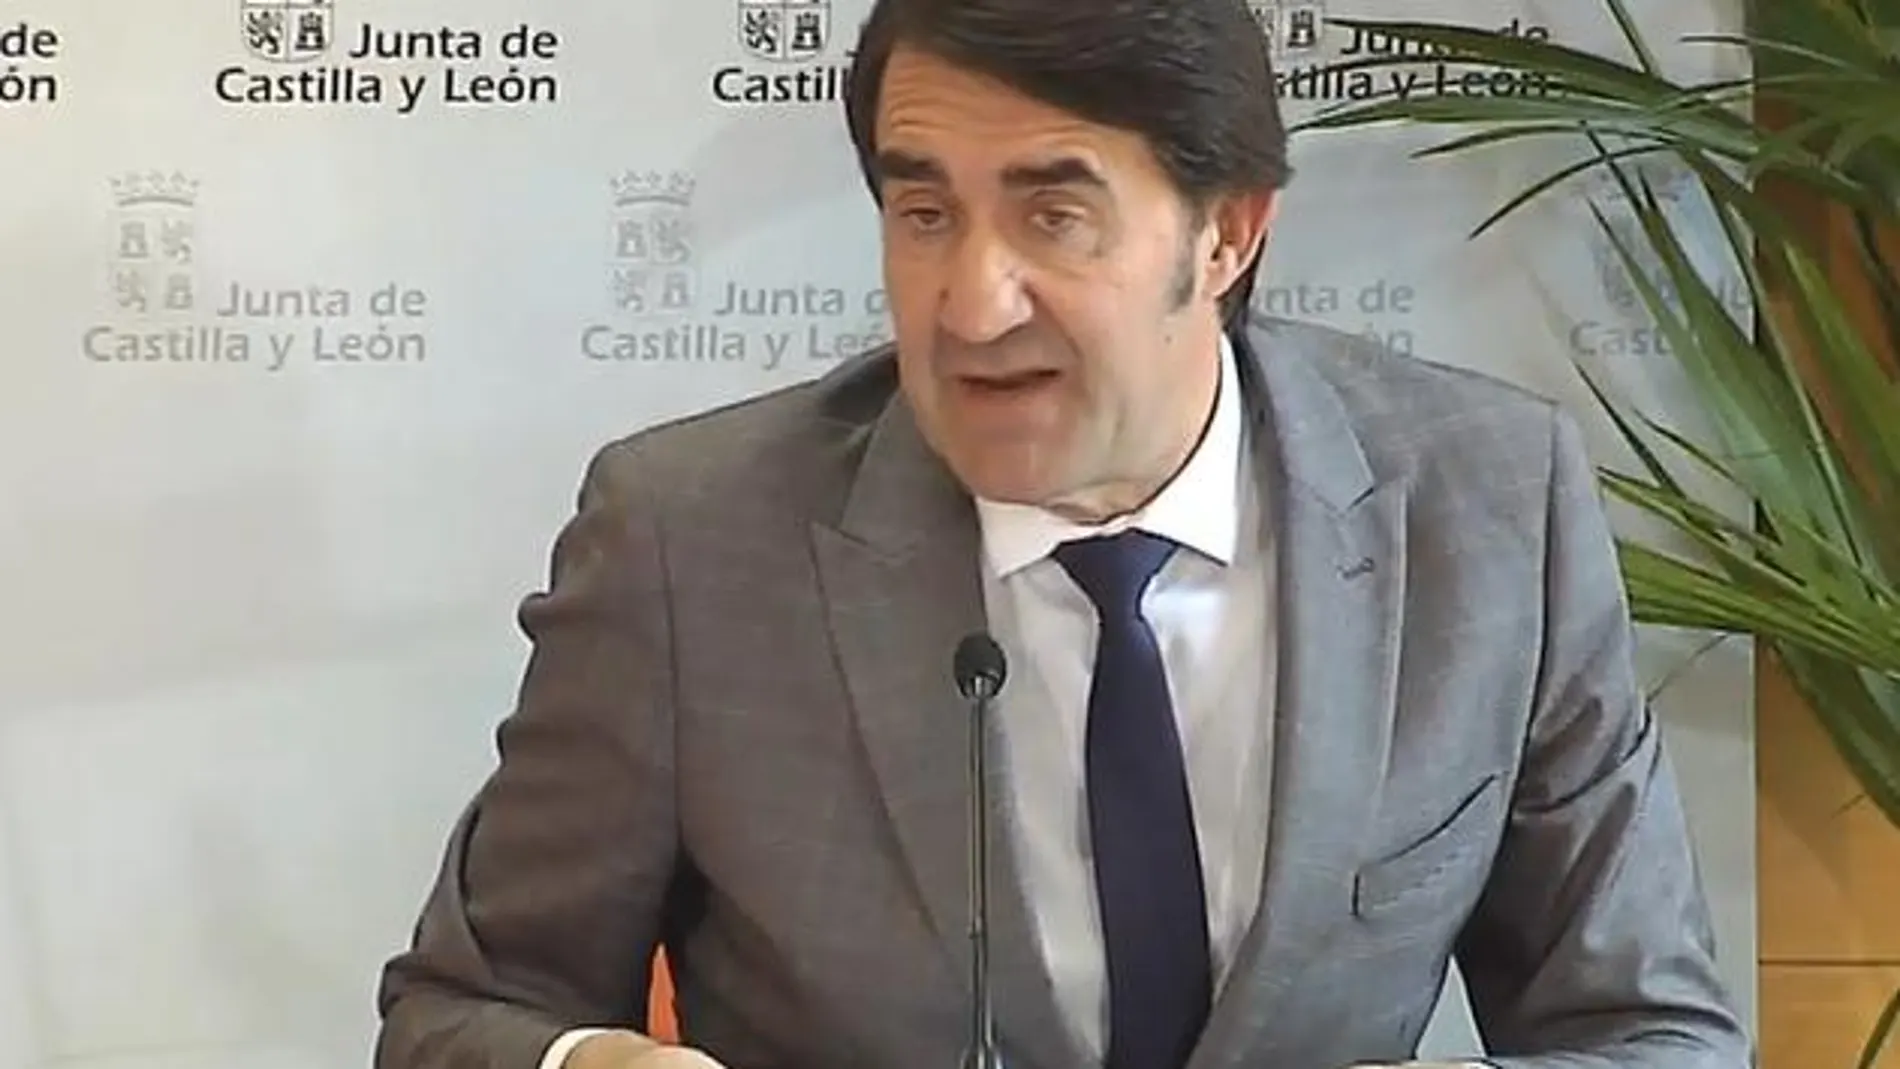 El consejero de Fomento y Medio Ambiente, Juan Carlos Suárez-Quiñones, comparece ante la prensa